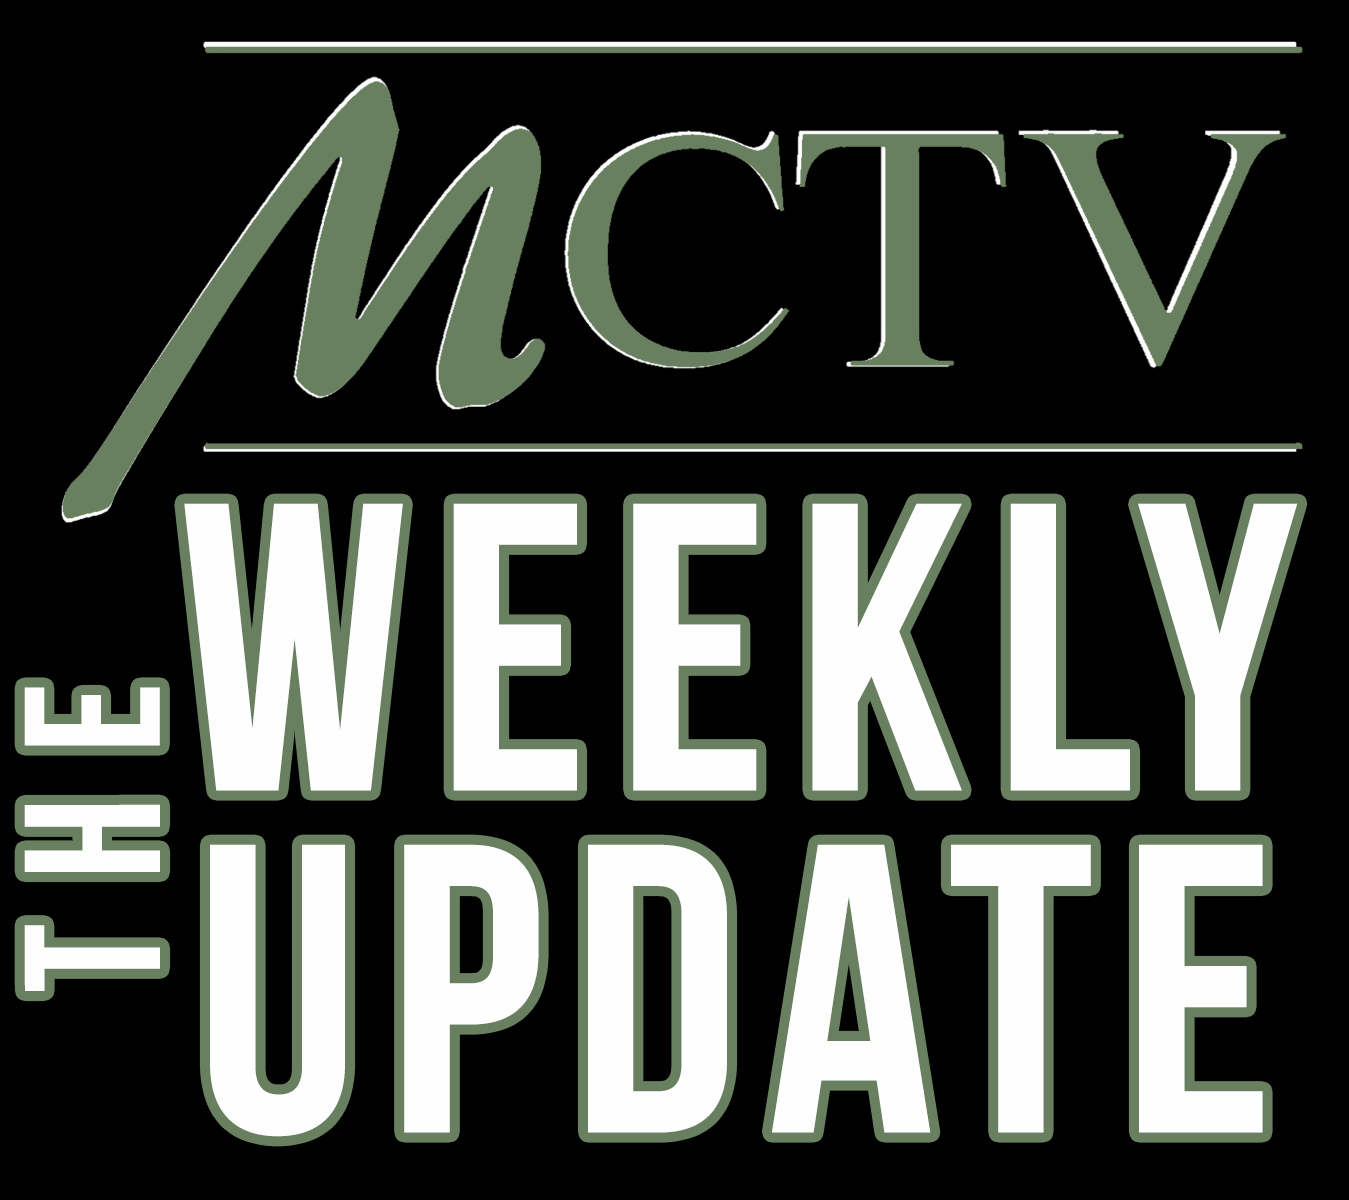 MCTV Weekly Update - Week of August